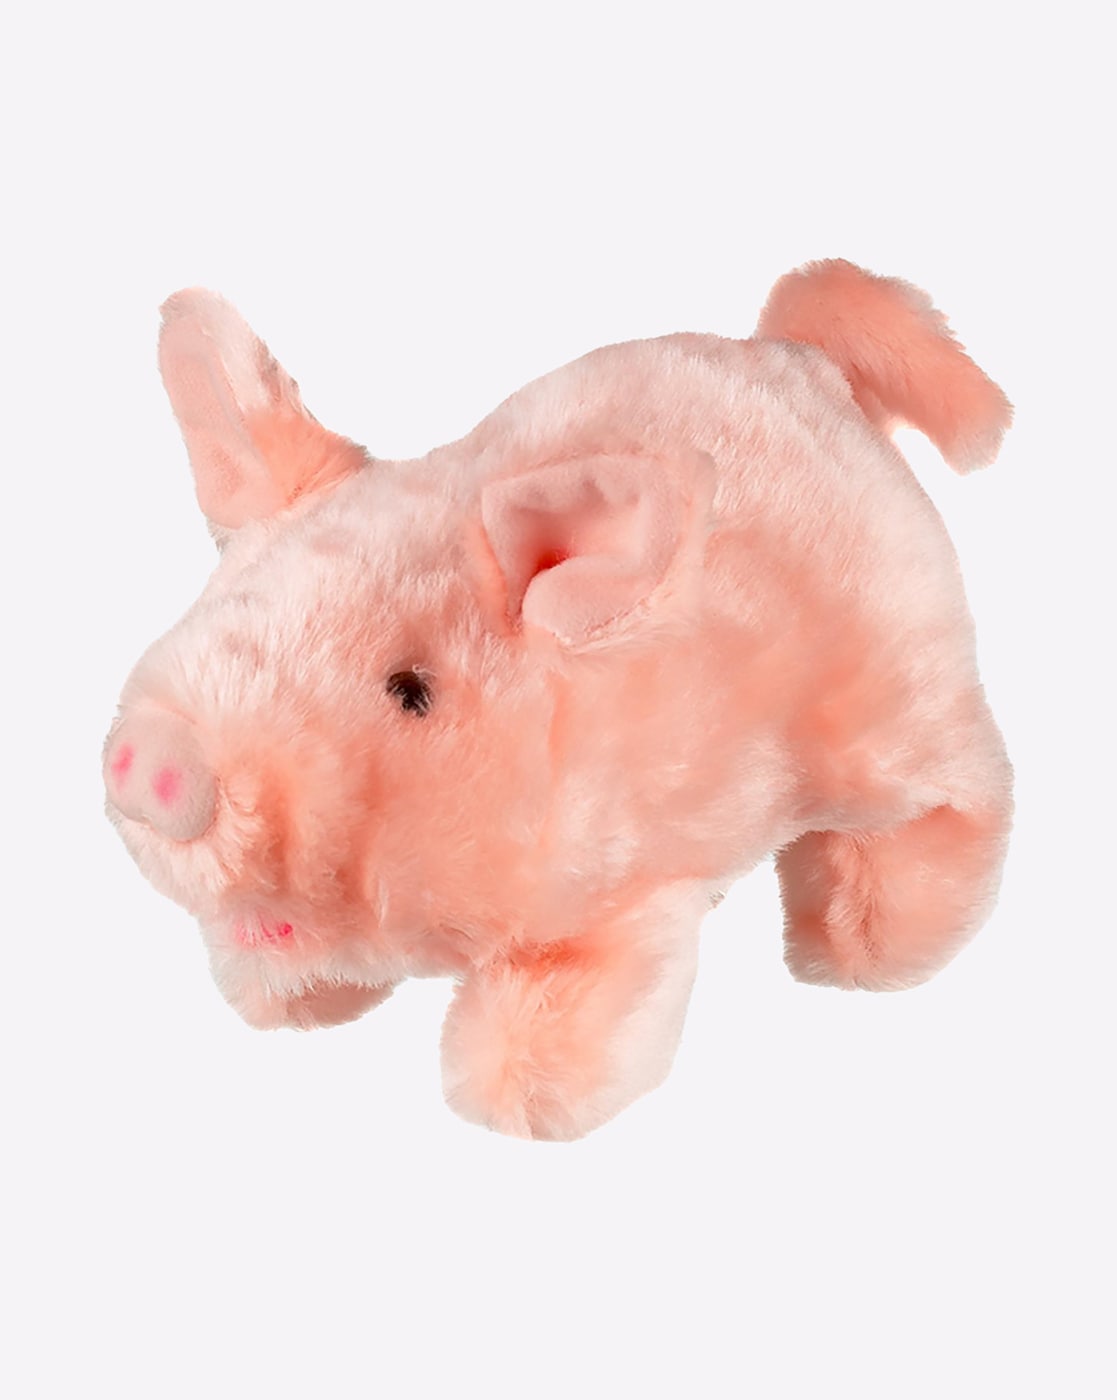 hamleys pig soft toy